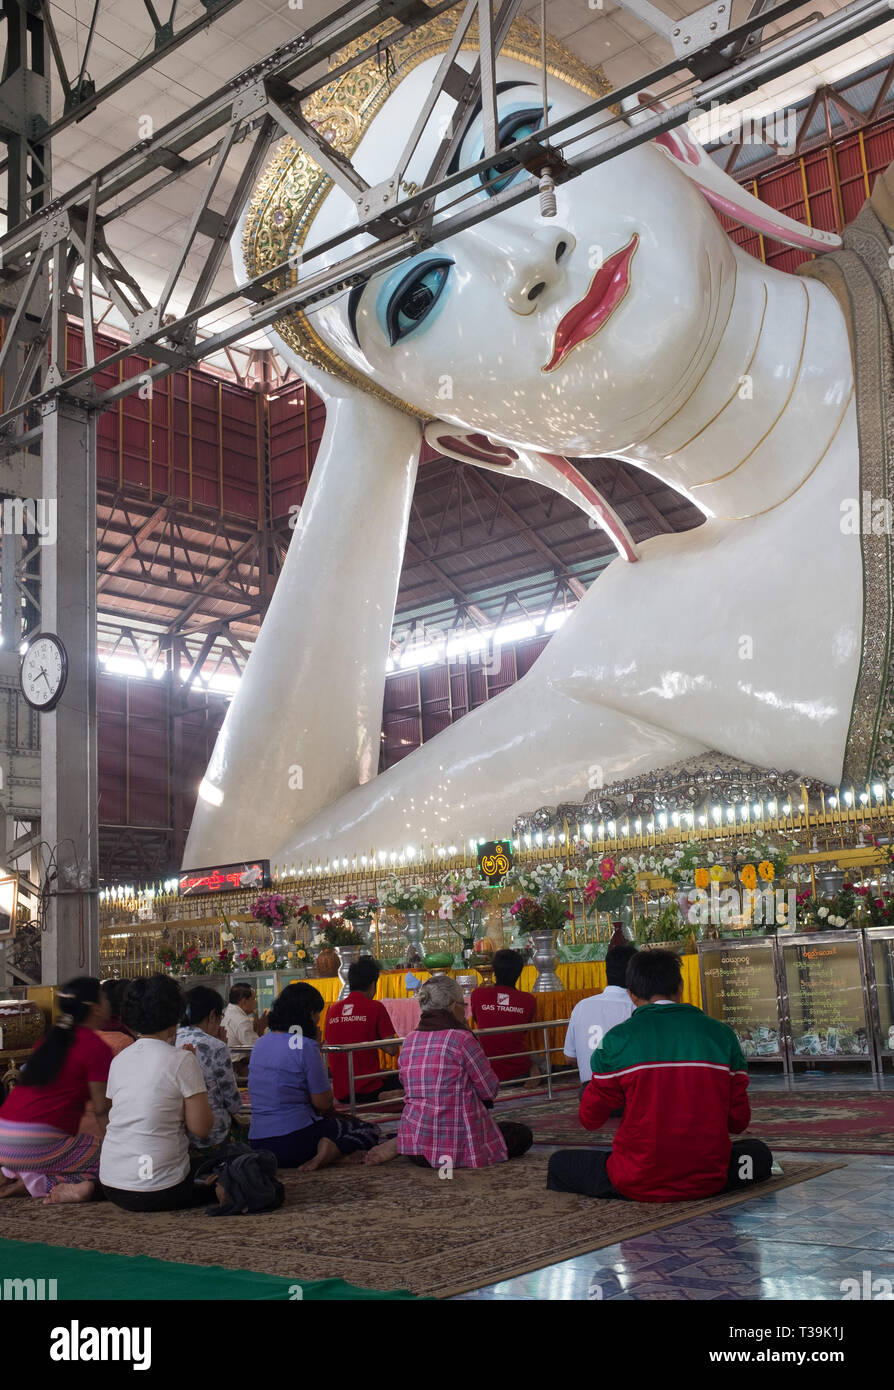 Les dévots à l'intérieur de la Pagode Chauk Htat Gyi, Temple des 65 mètres de long Bouddha couché libre, Yangon, Myanmar (Birmanie) Banque D'Images